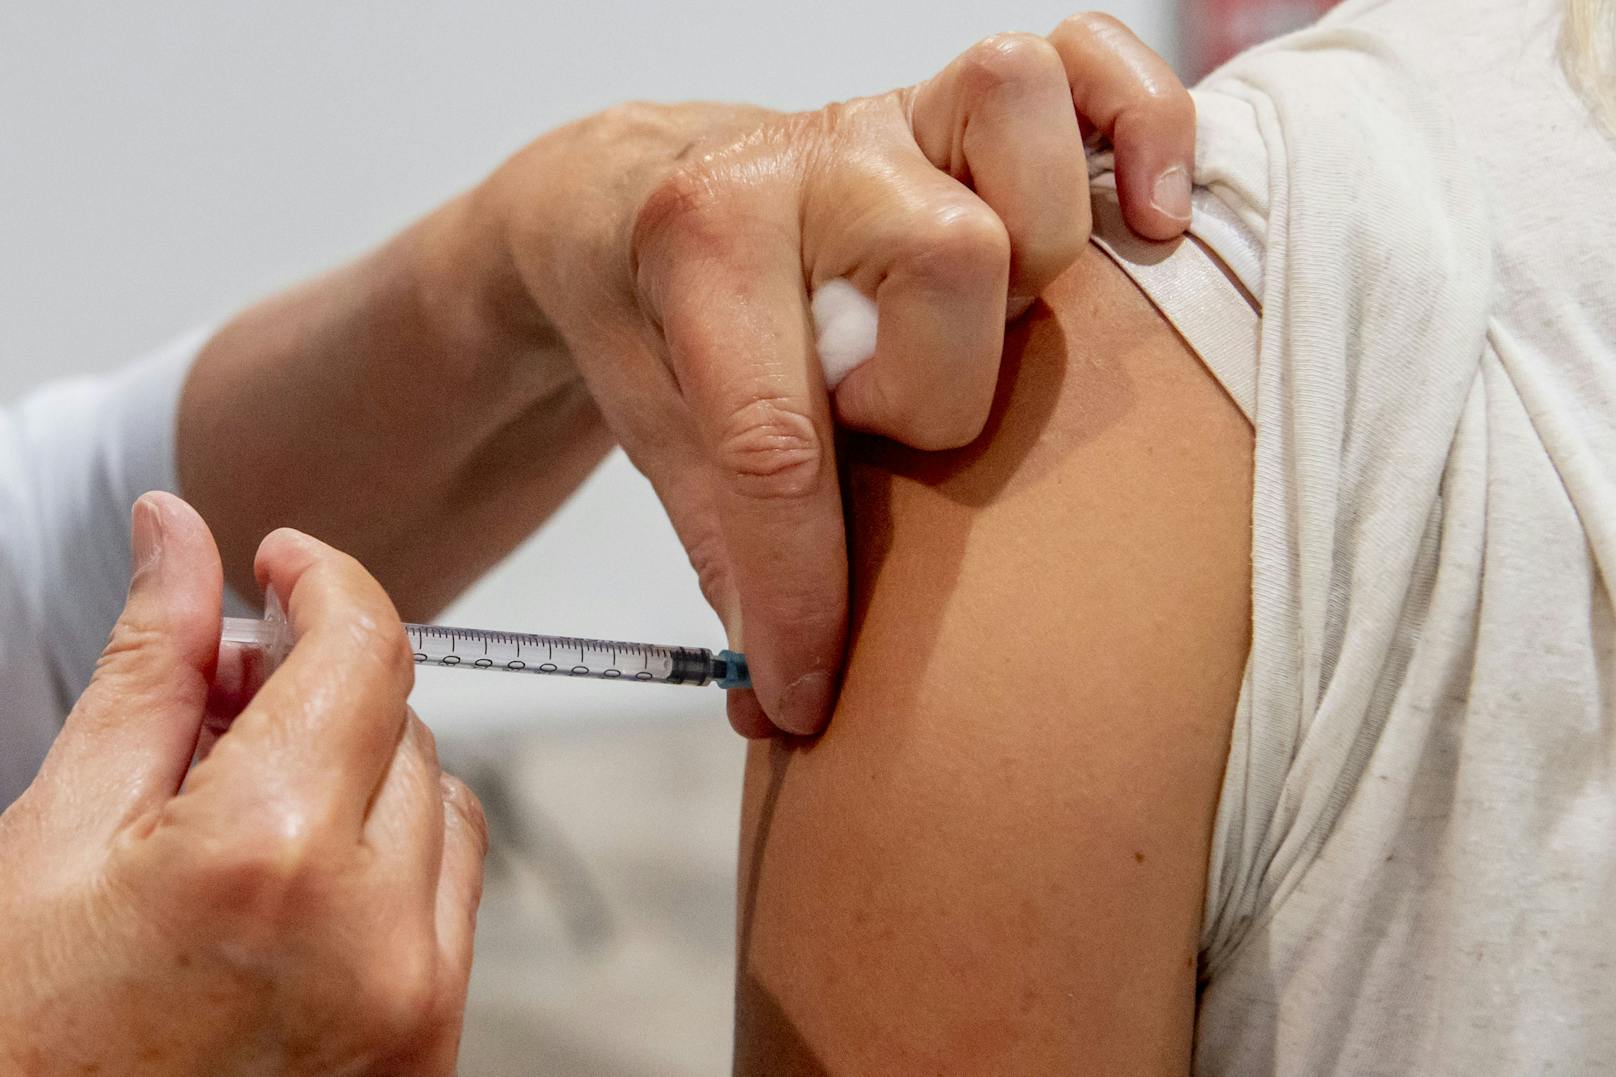 Impfung ist auch für Teenager empfehlenswert - laut Experten.